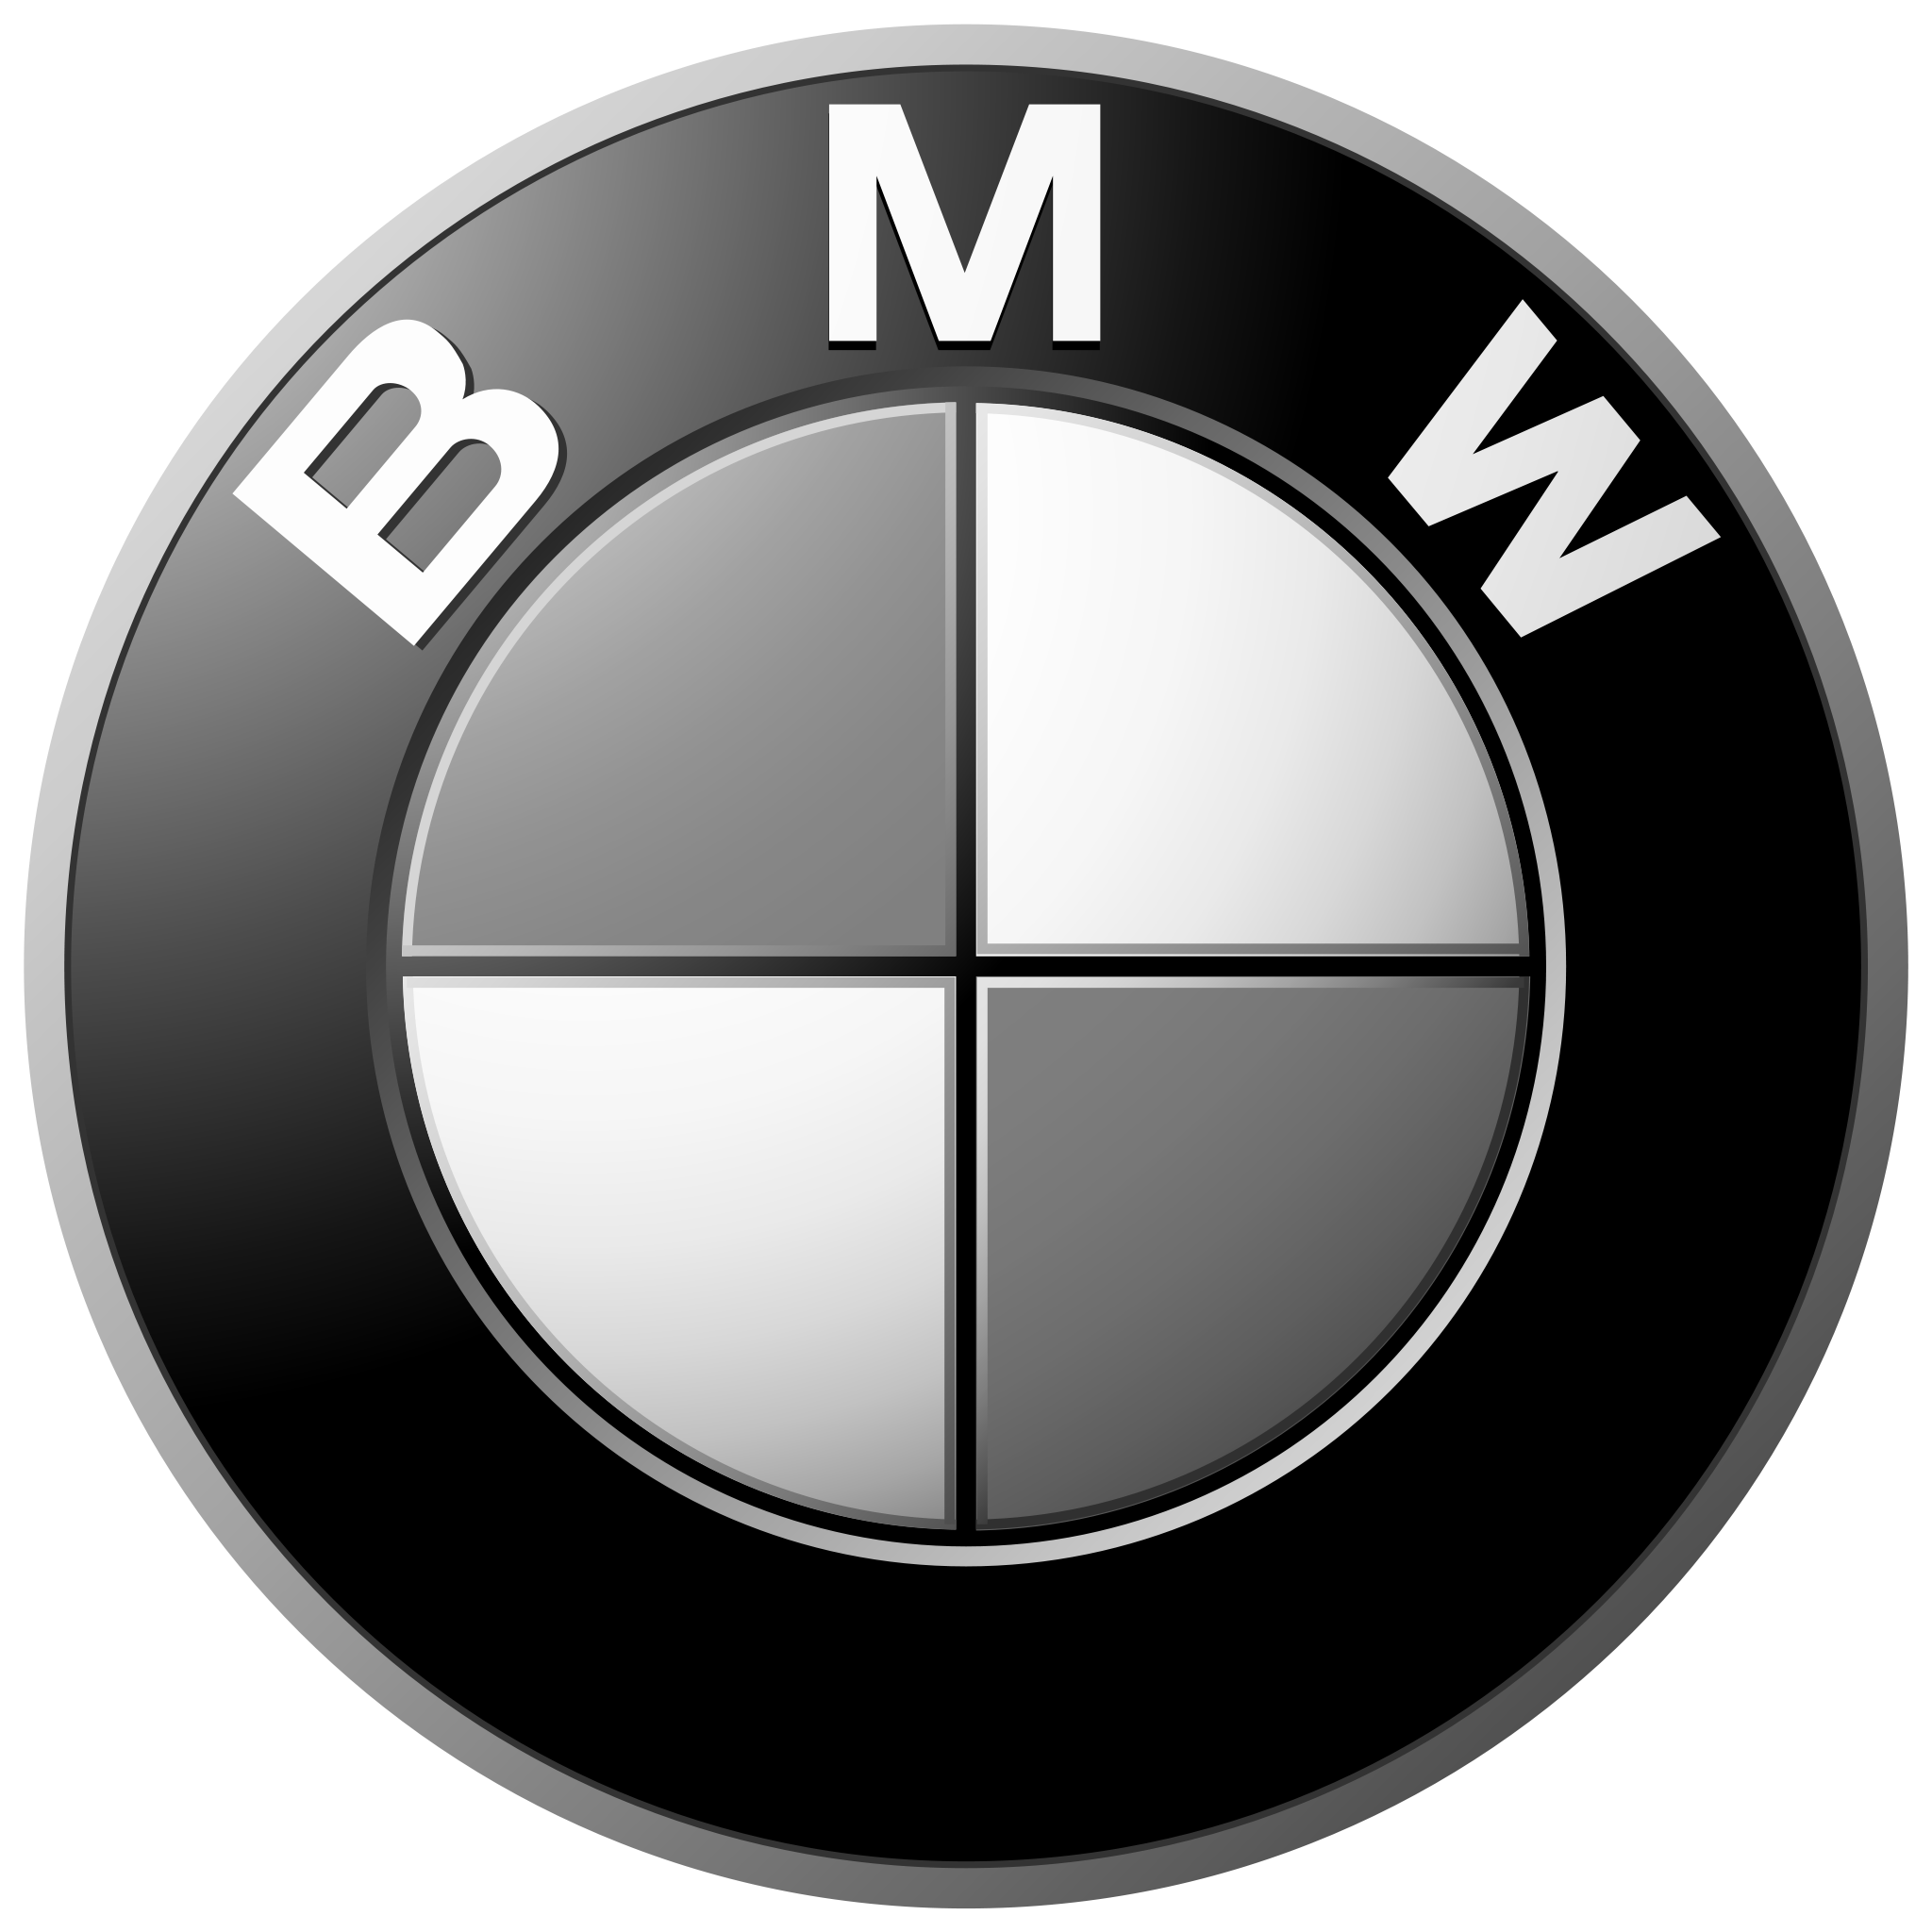 008_BMW-logo-2000-2048x2048 copy.png